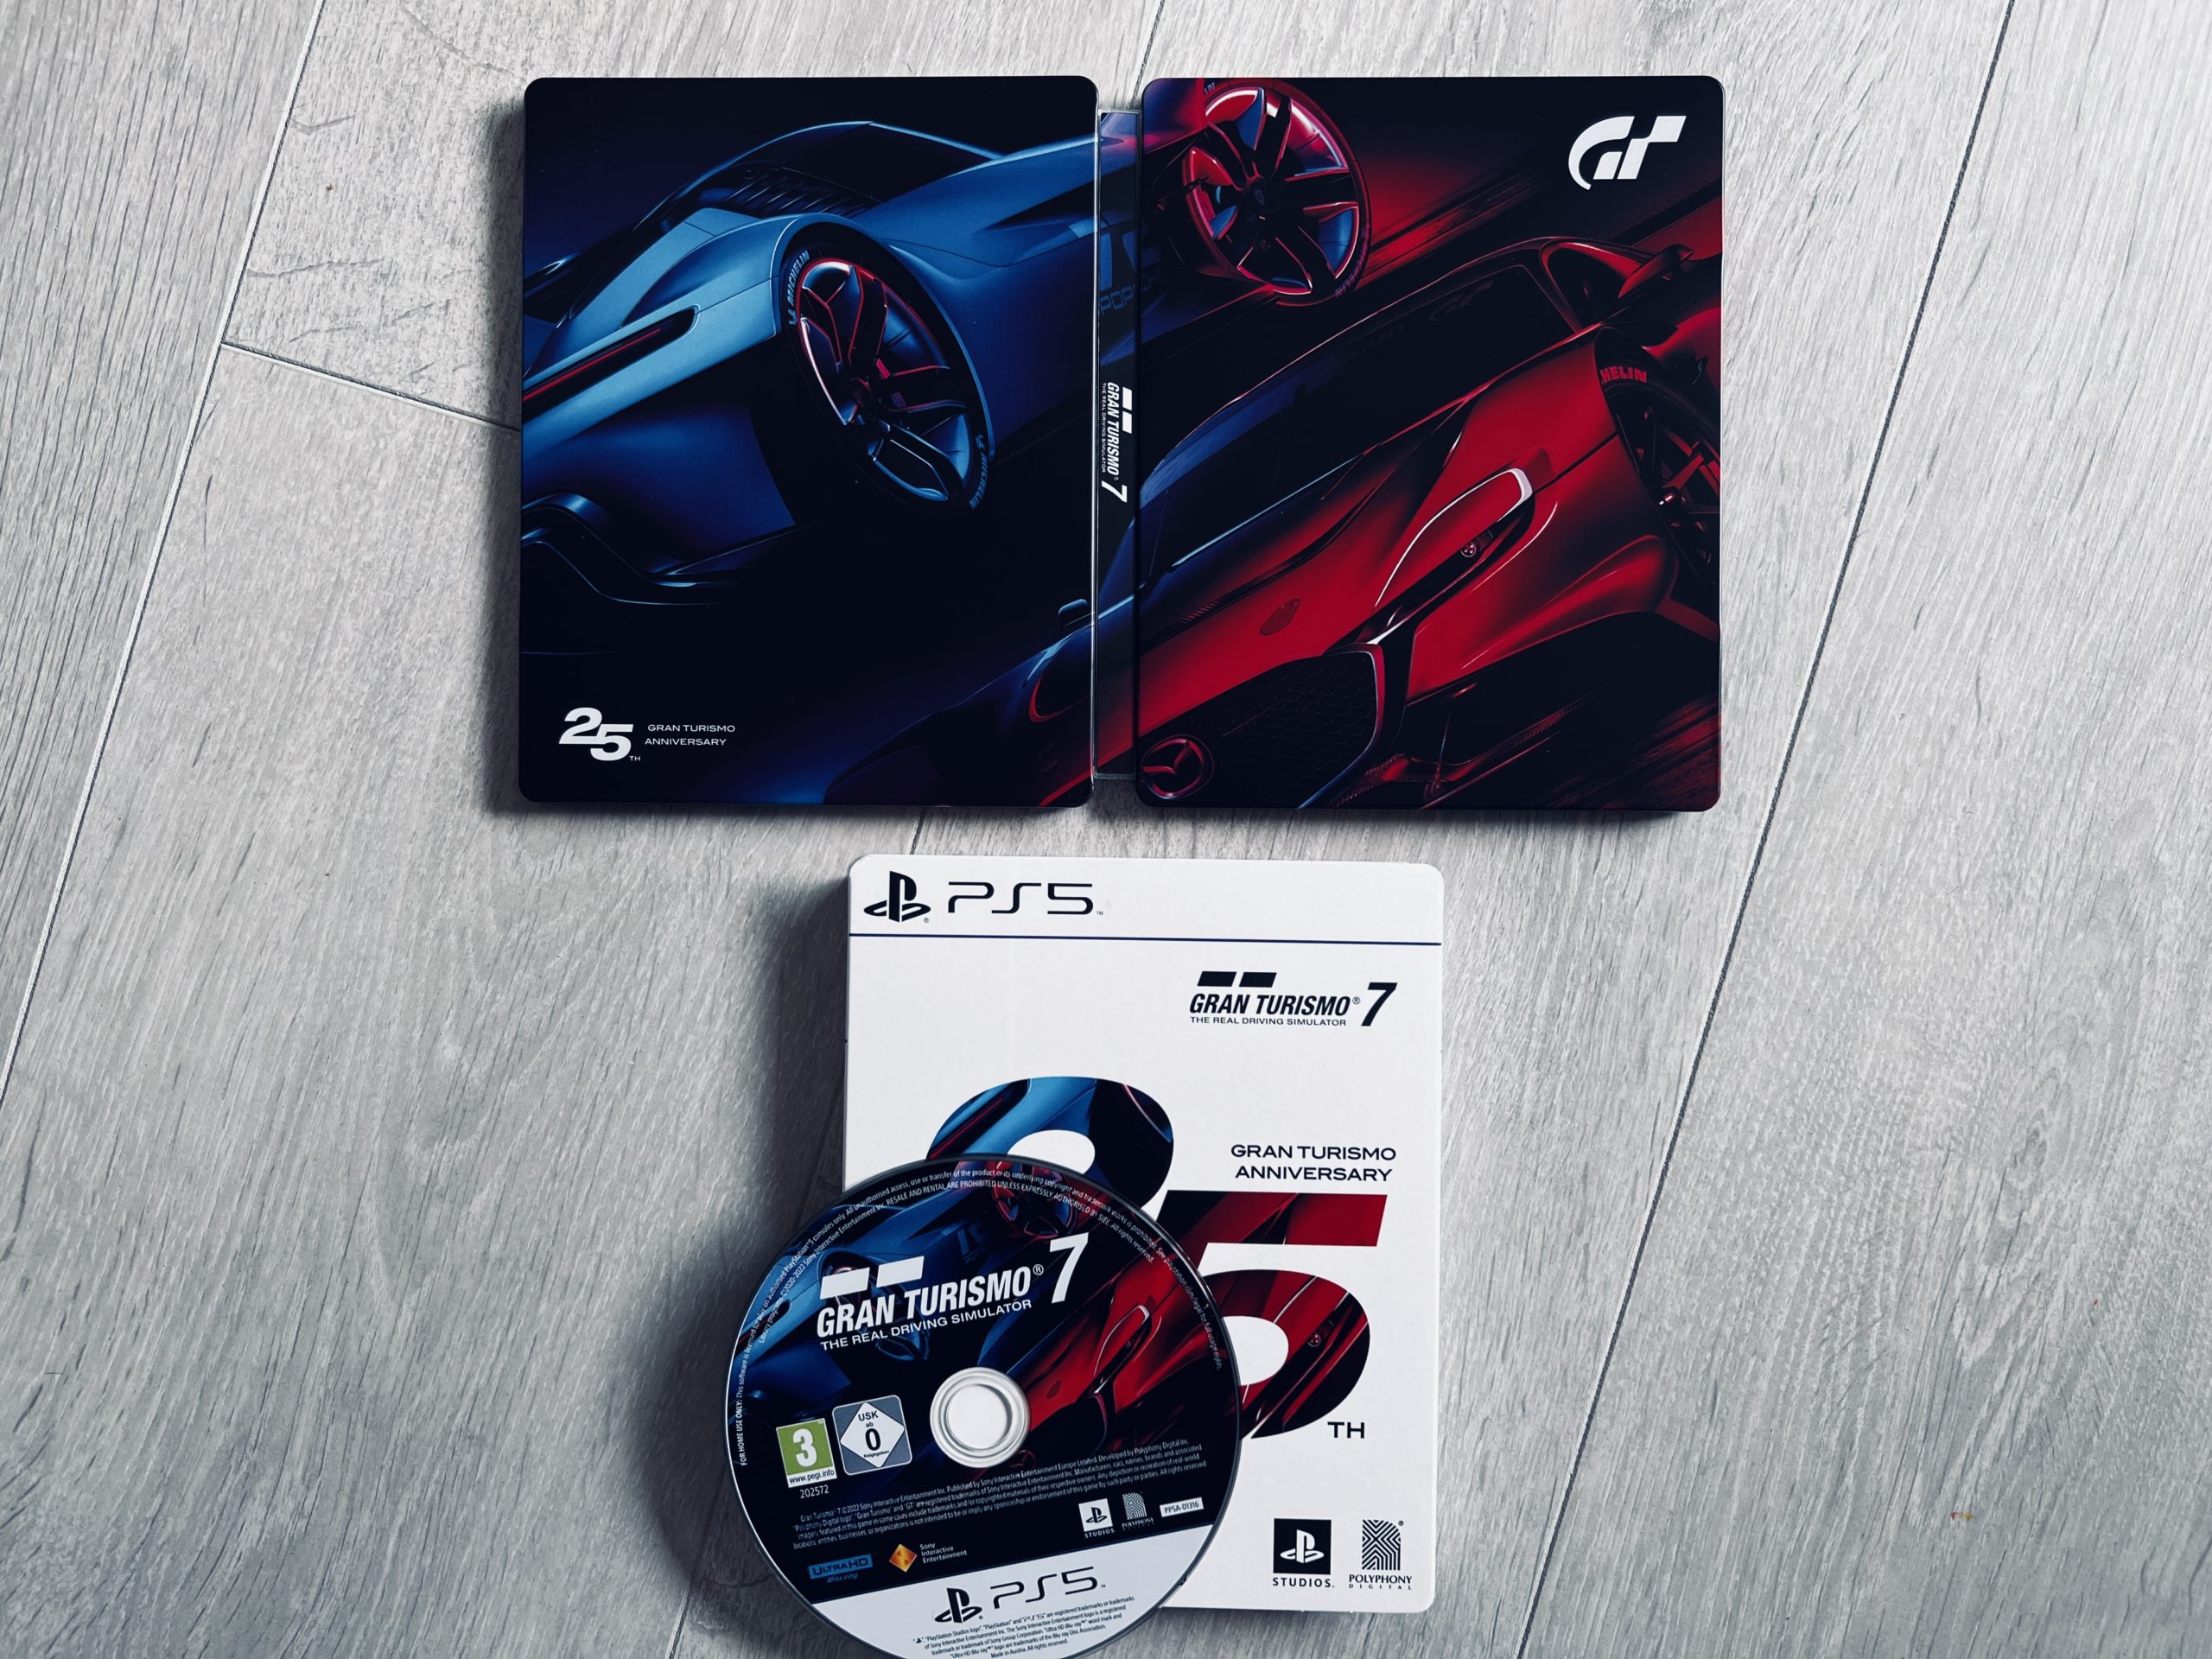 Gran Turismo 7 : le meilleur jeu de simulation automobile disponible à  moins de 50 euros sur PS5